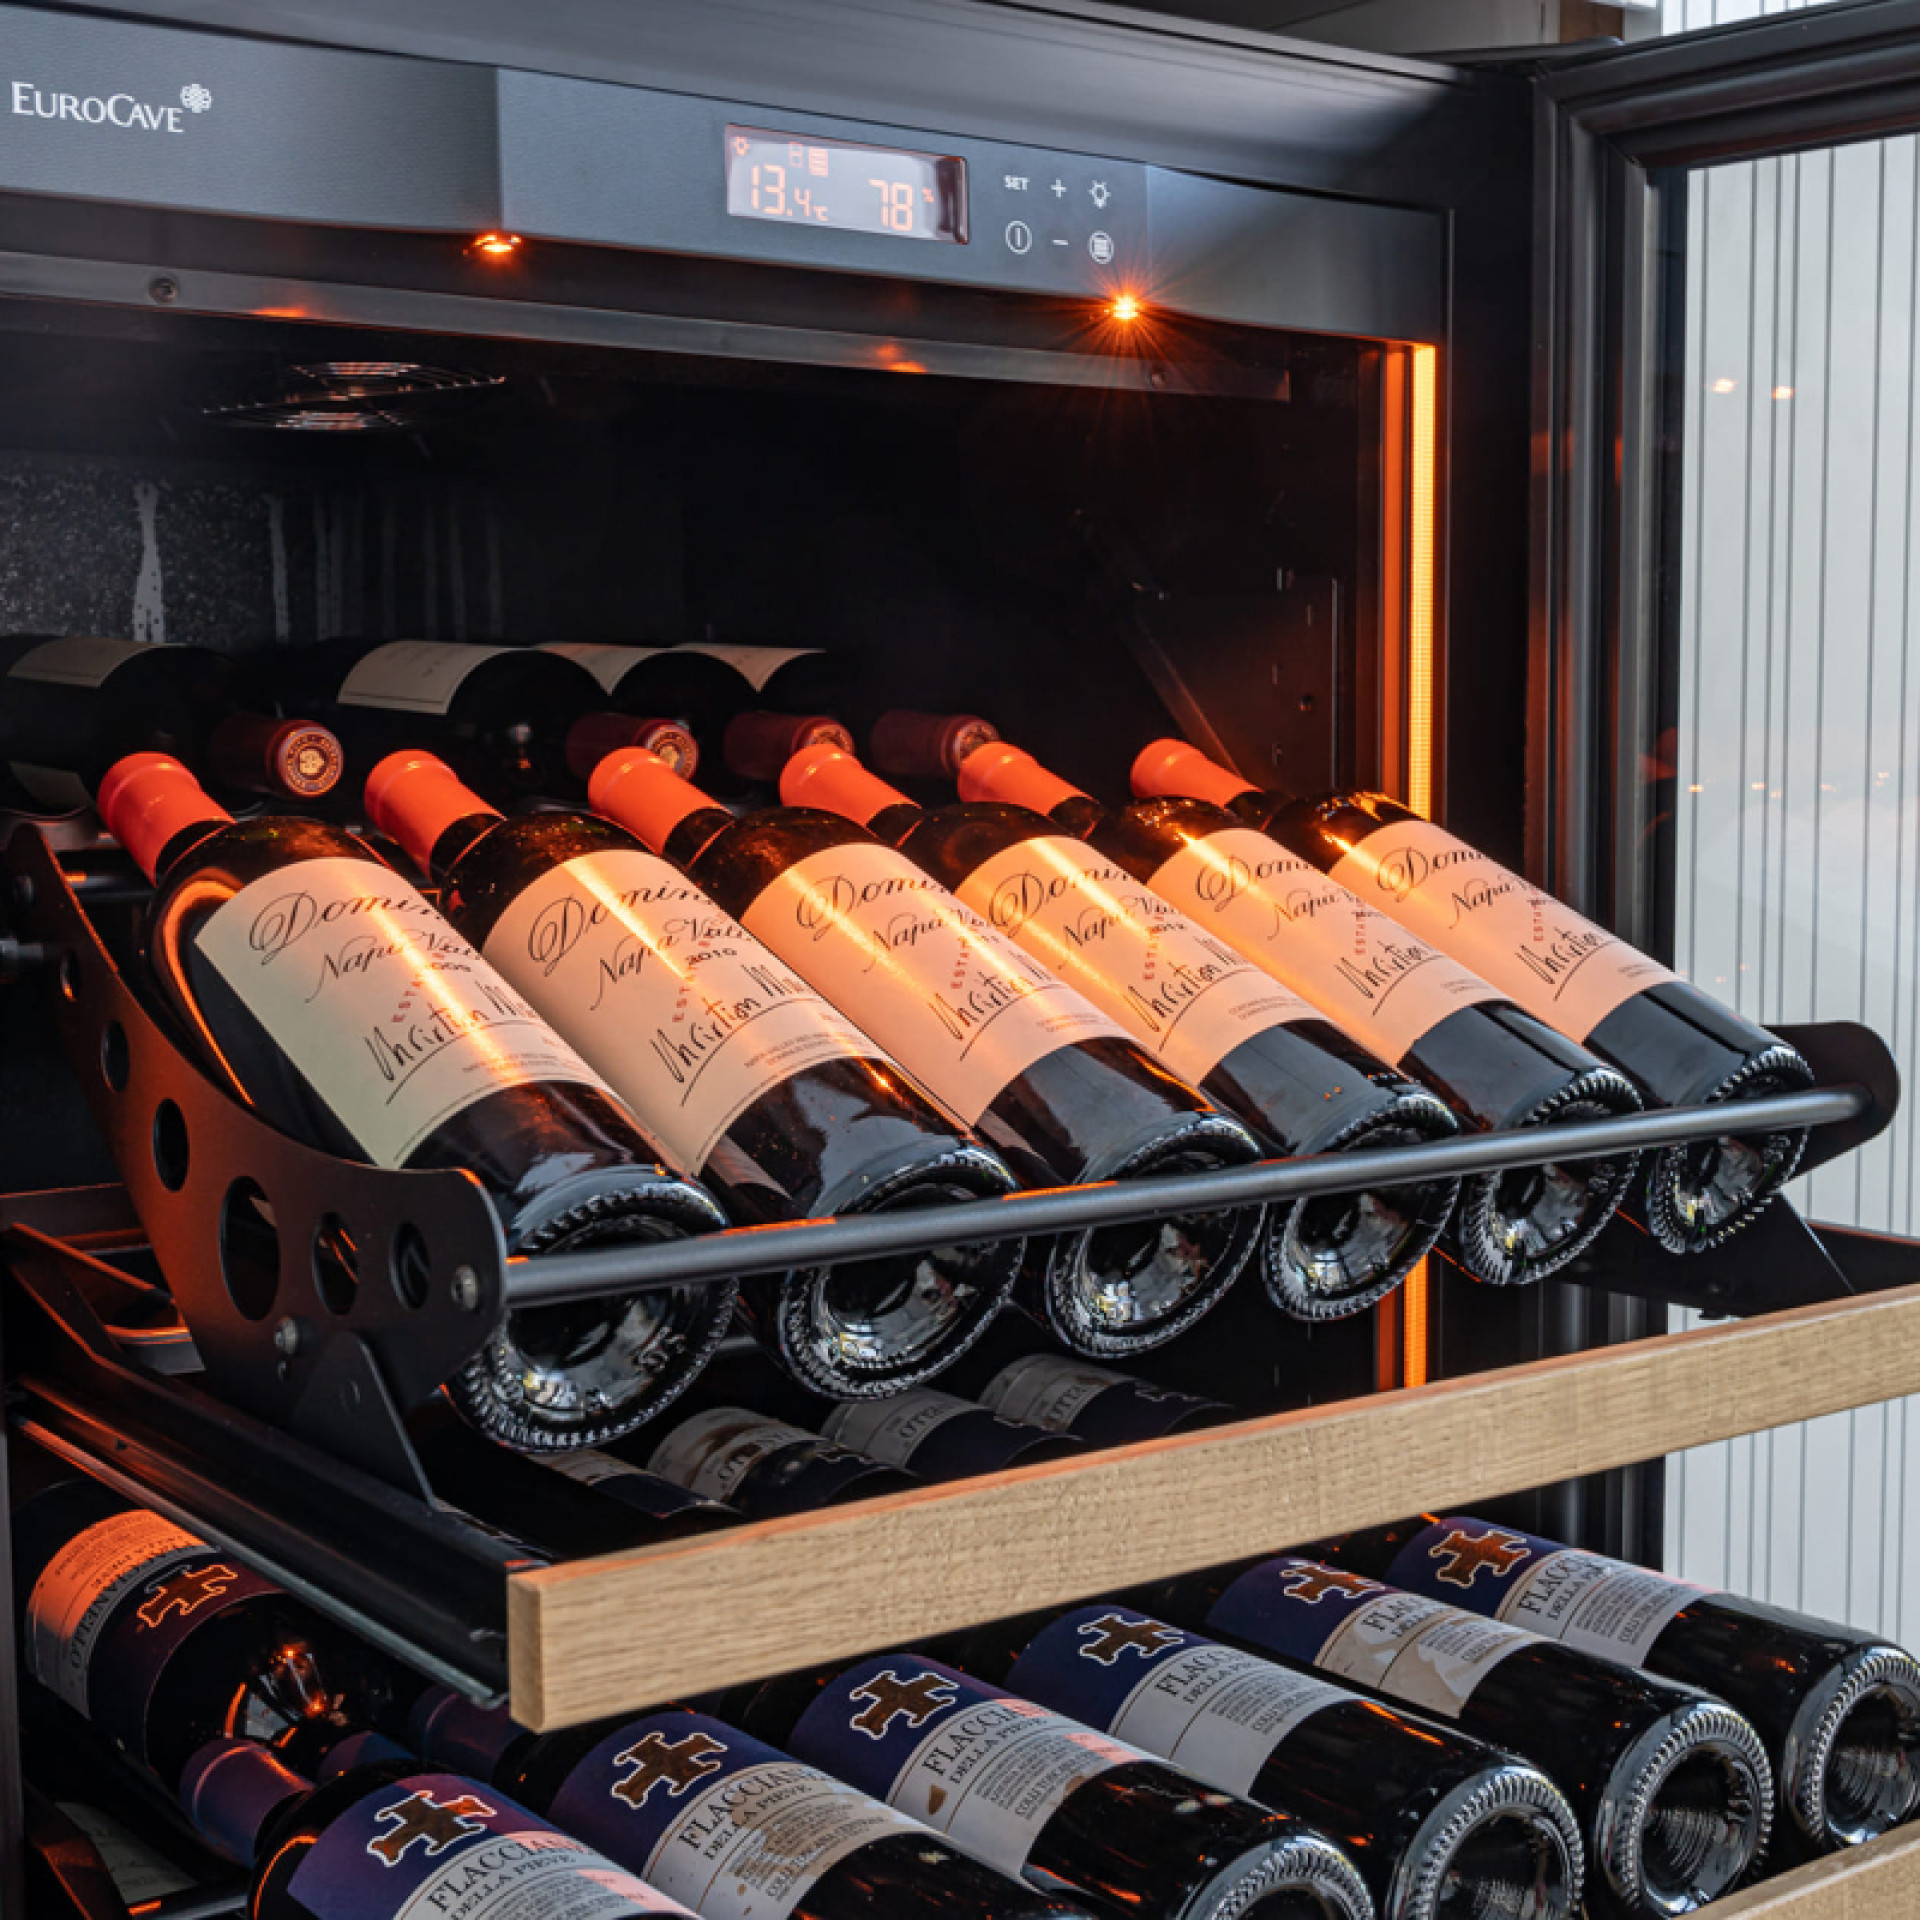 rangement-cave-a-vin-kit-presentation-bouteilles-vin-articule-adaptable-ACMS2-eurocave.jpg